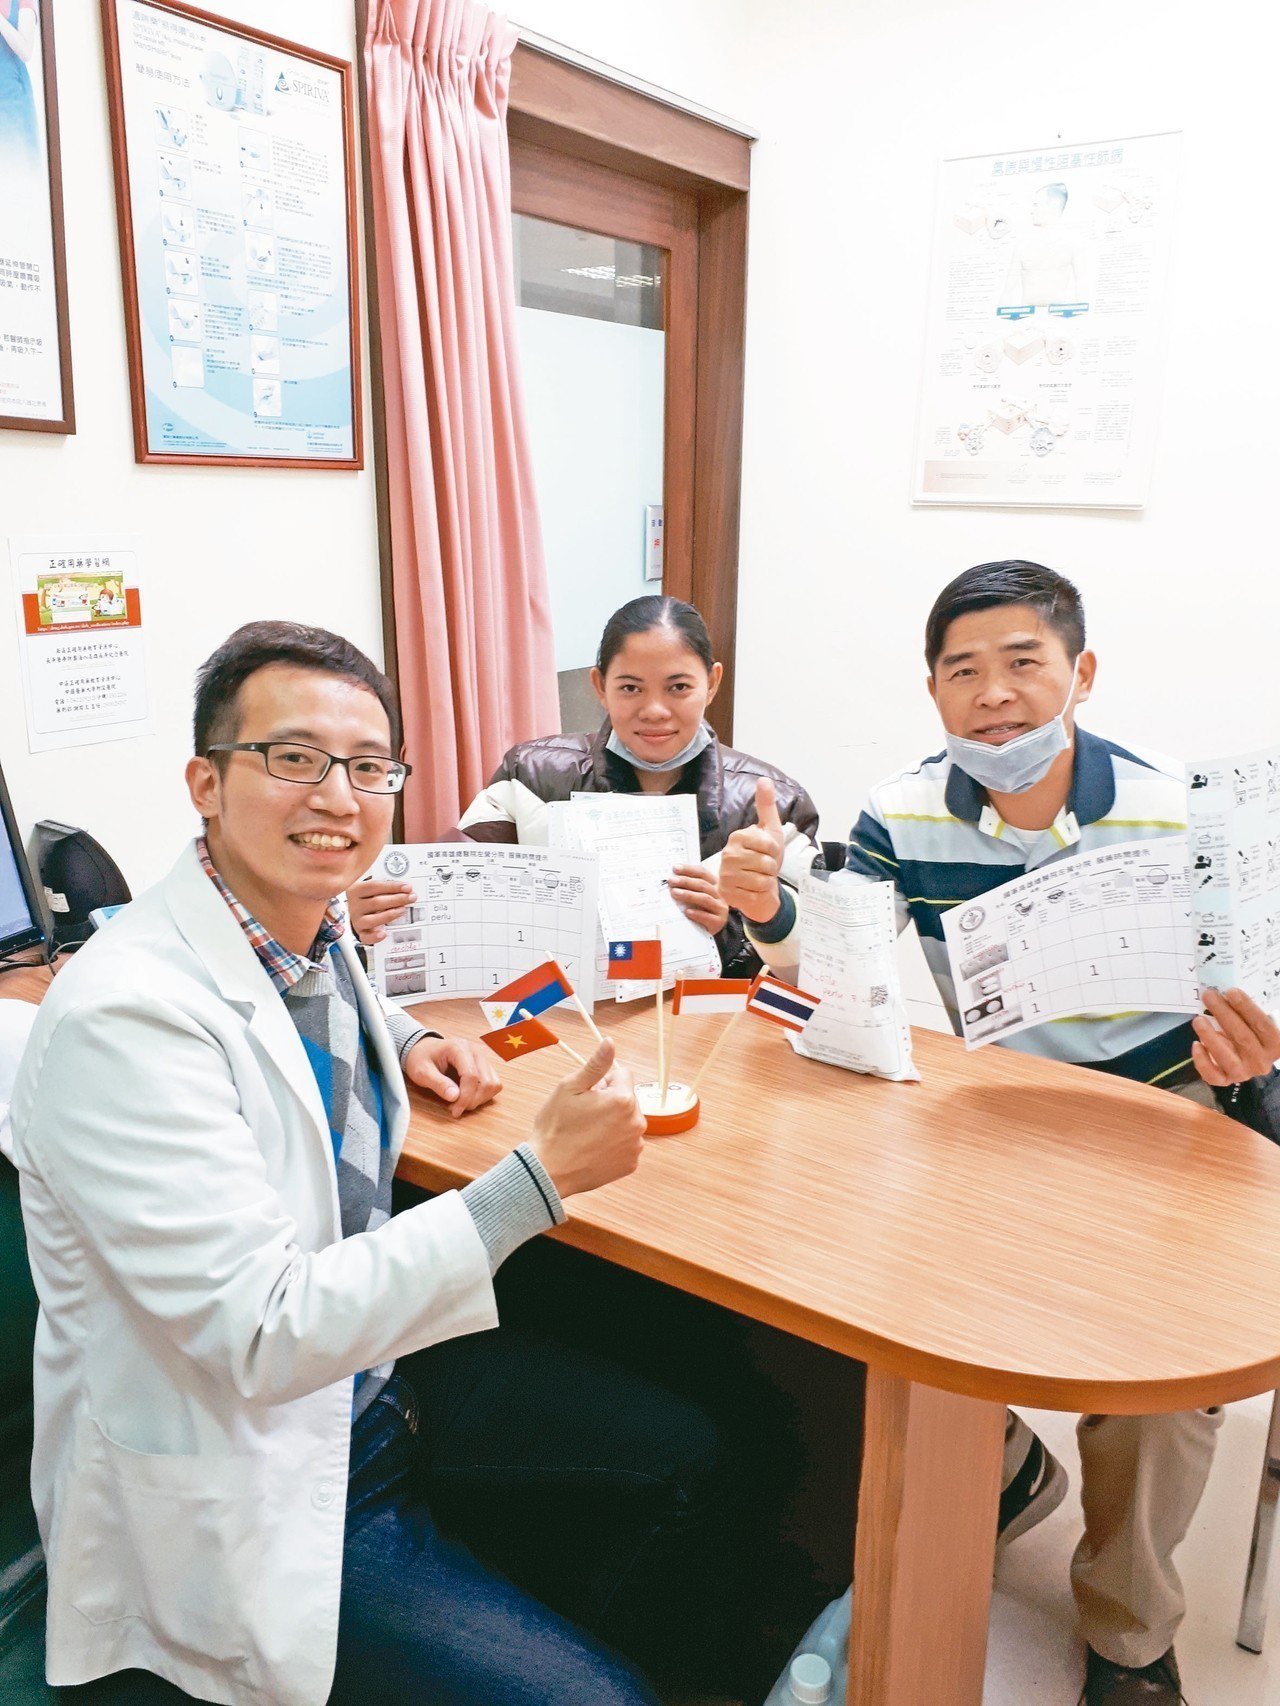 廖先生(右起)與印尼籍看護，感謝藥師提供印尼語用藥說明，並與看護一一確認藥品使用。